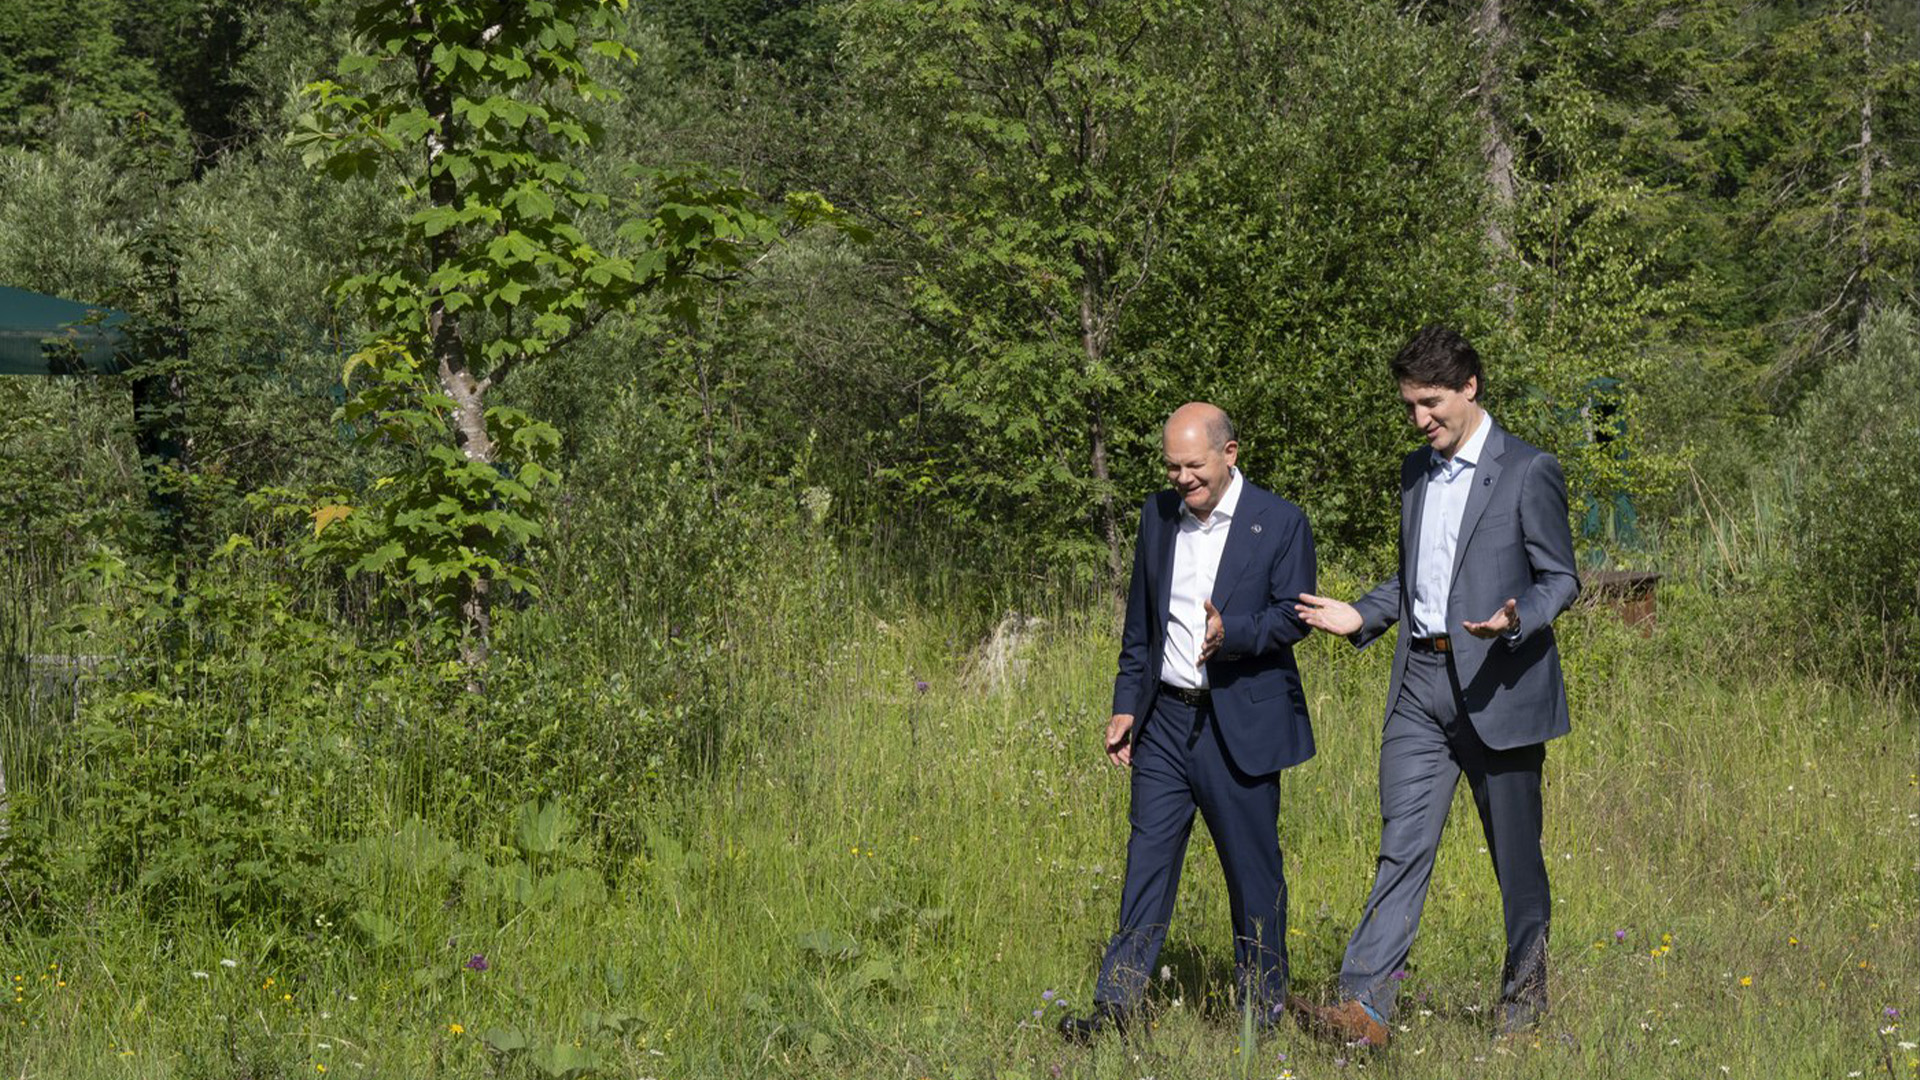 Le premier ministre Justin Trudeau et Olaf Scholz, chancelier de l'Allemagne, se promènent au sommet du G7 à Schloss Elmau le 27 juin 2022.